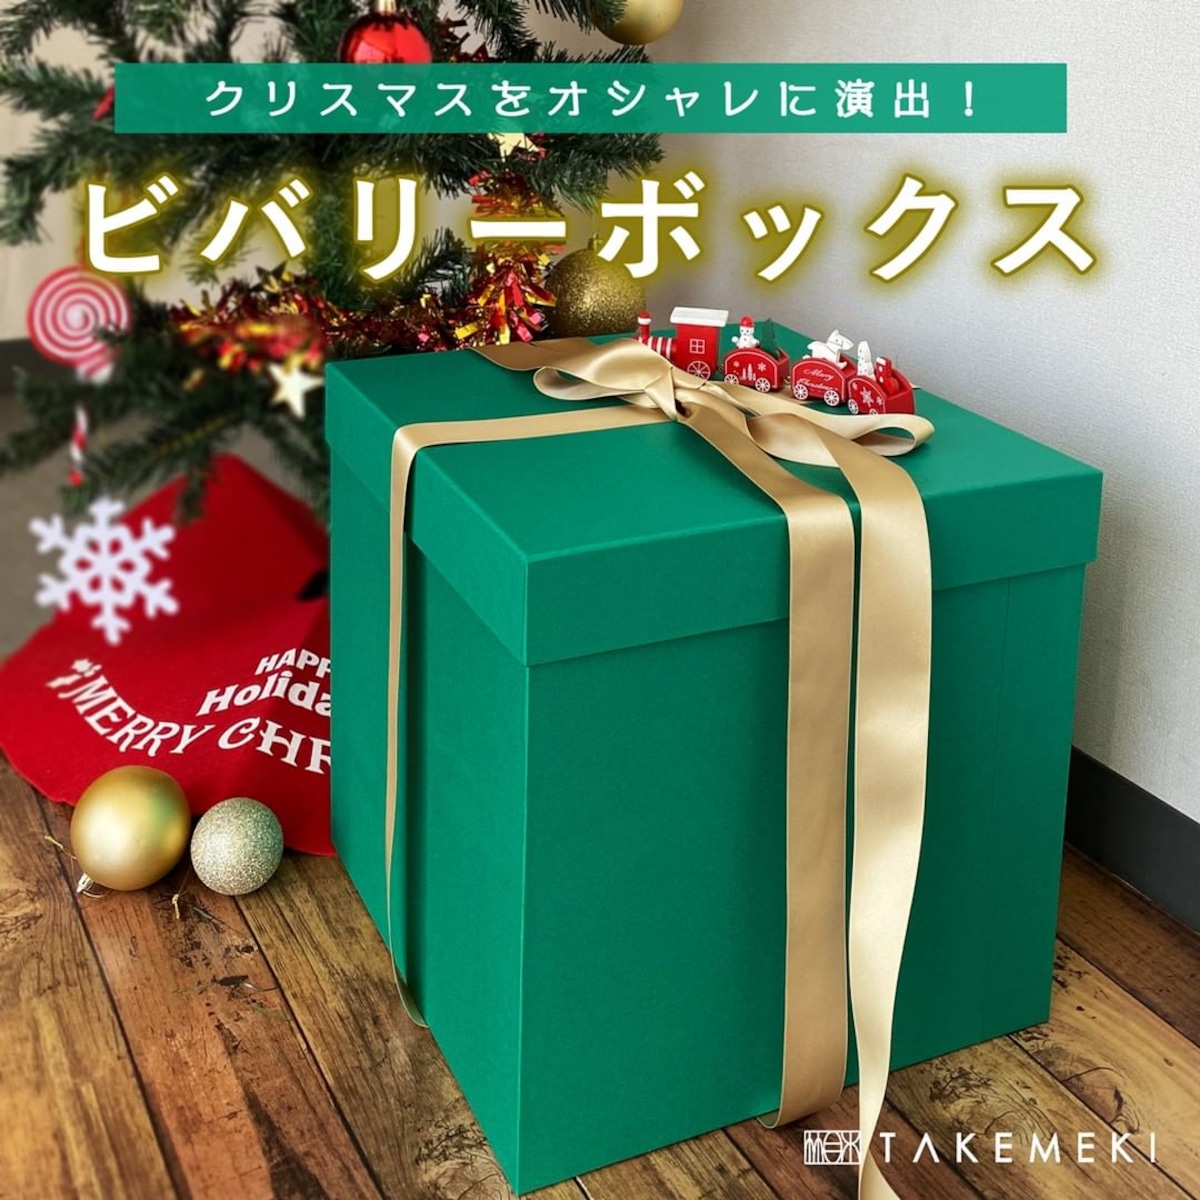 ビバリーボックス 大きいギフトボックス | 【TAKEMEKI】~ 3,980円